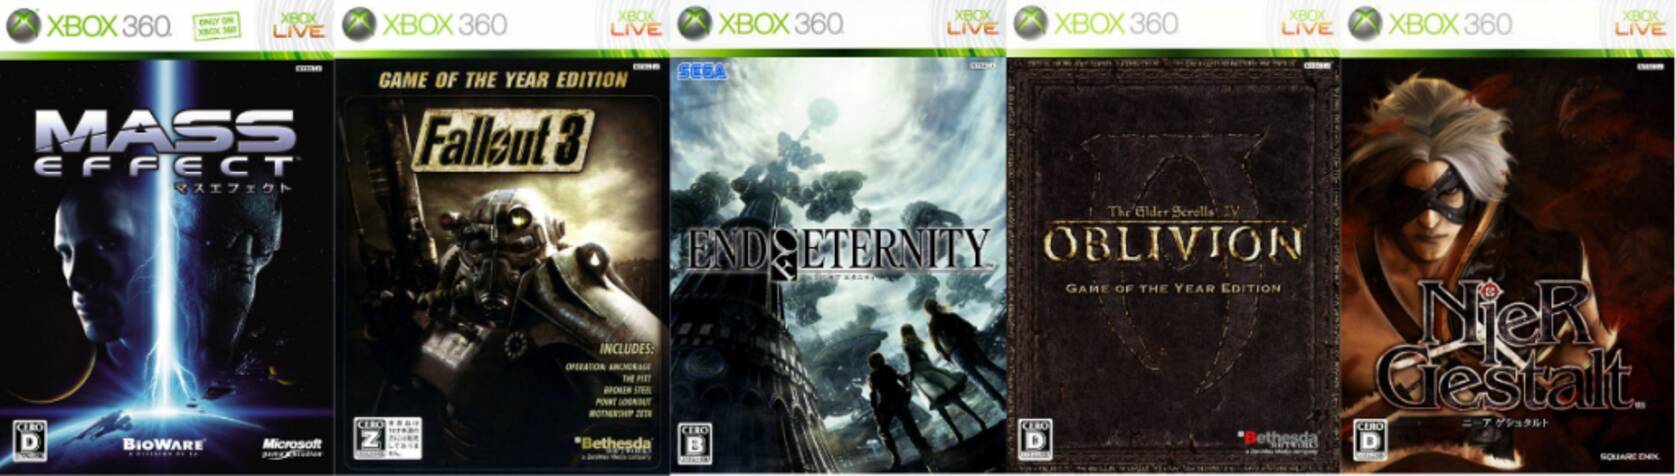 年代別名作紹介 09年 10年発売の名作rpgゲーム Xbox 360編 19年5月3日 エキサイトニュース 2 5